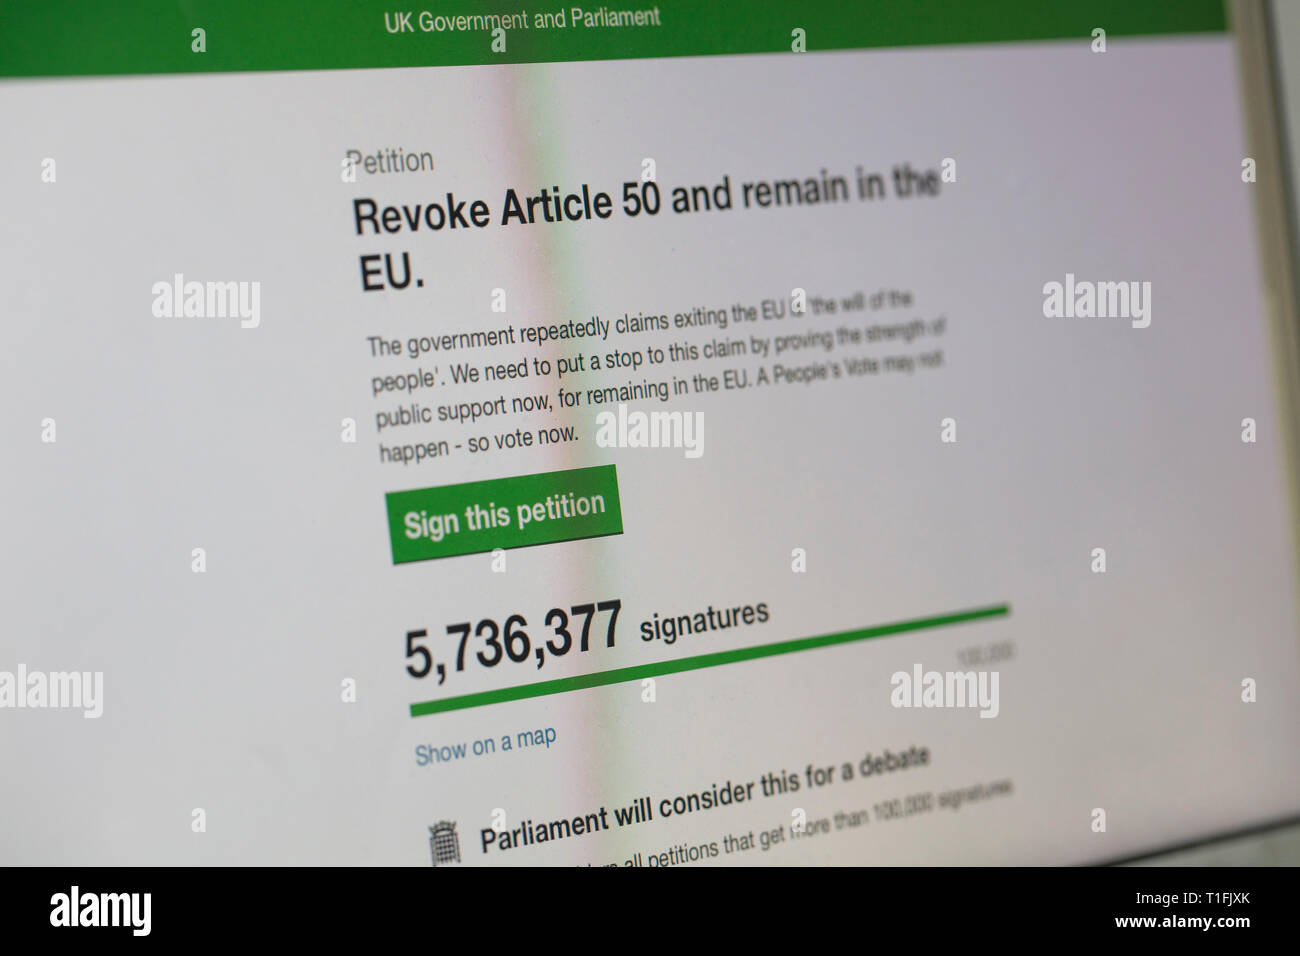 Londres, Reino Unido - 26 de marzo de 2019: petición online para revocar el artículo 50 y reconsiderar brexit tiene más de 5 millones de firmas. Foto de stock